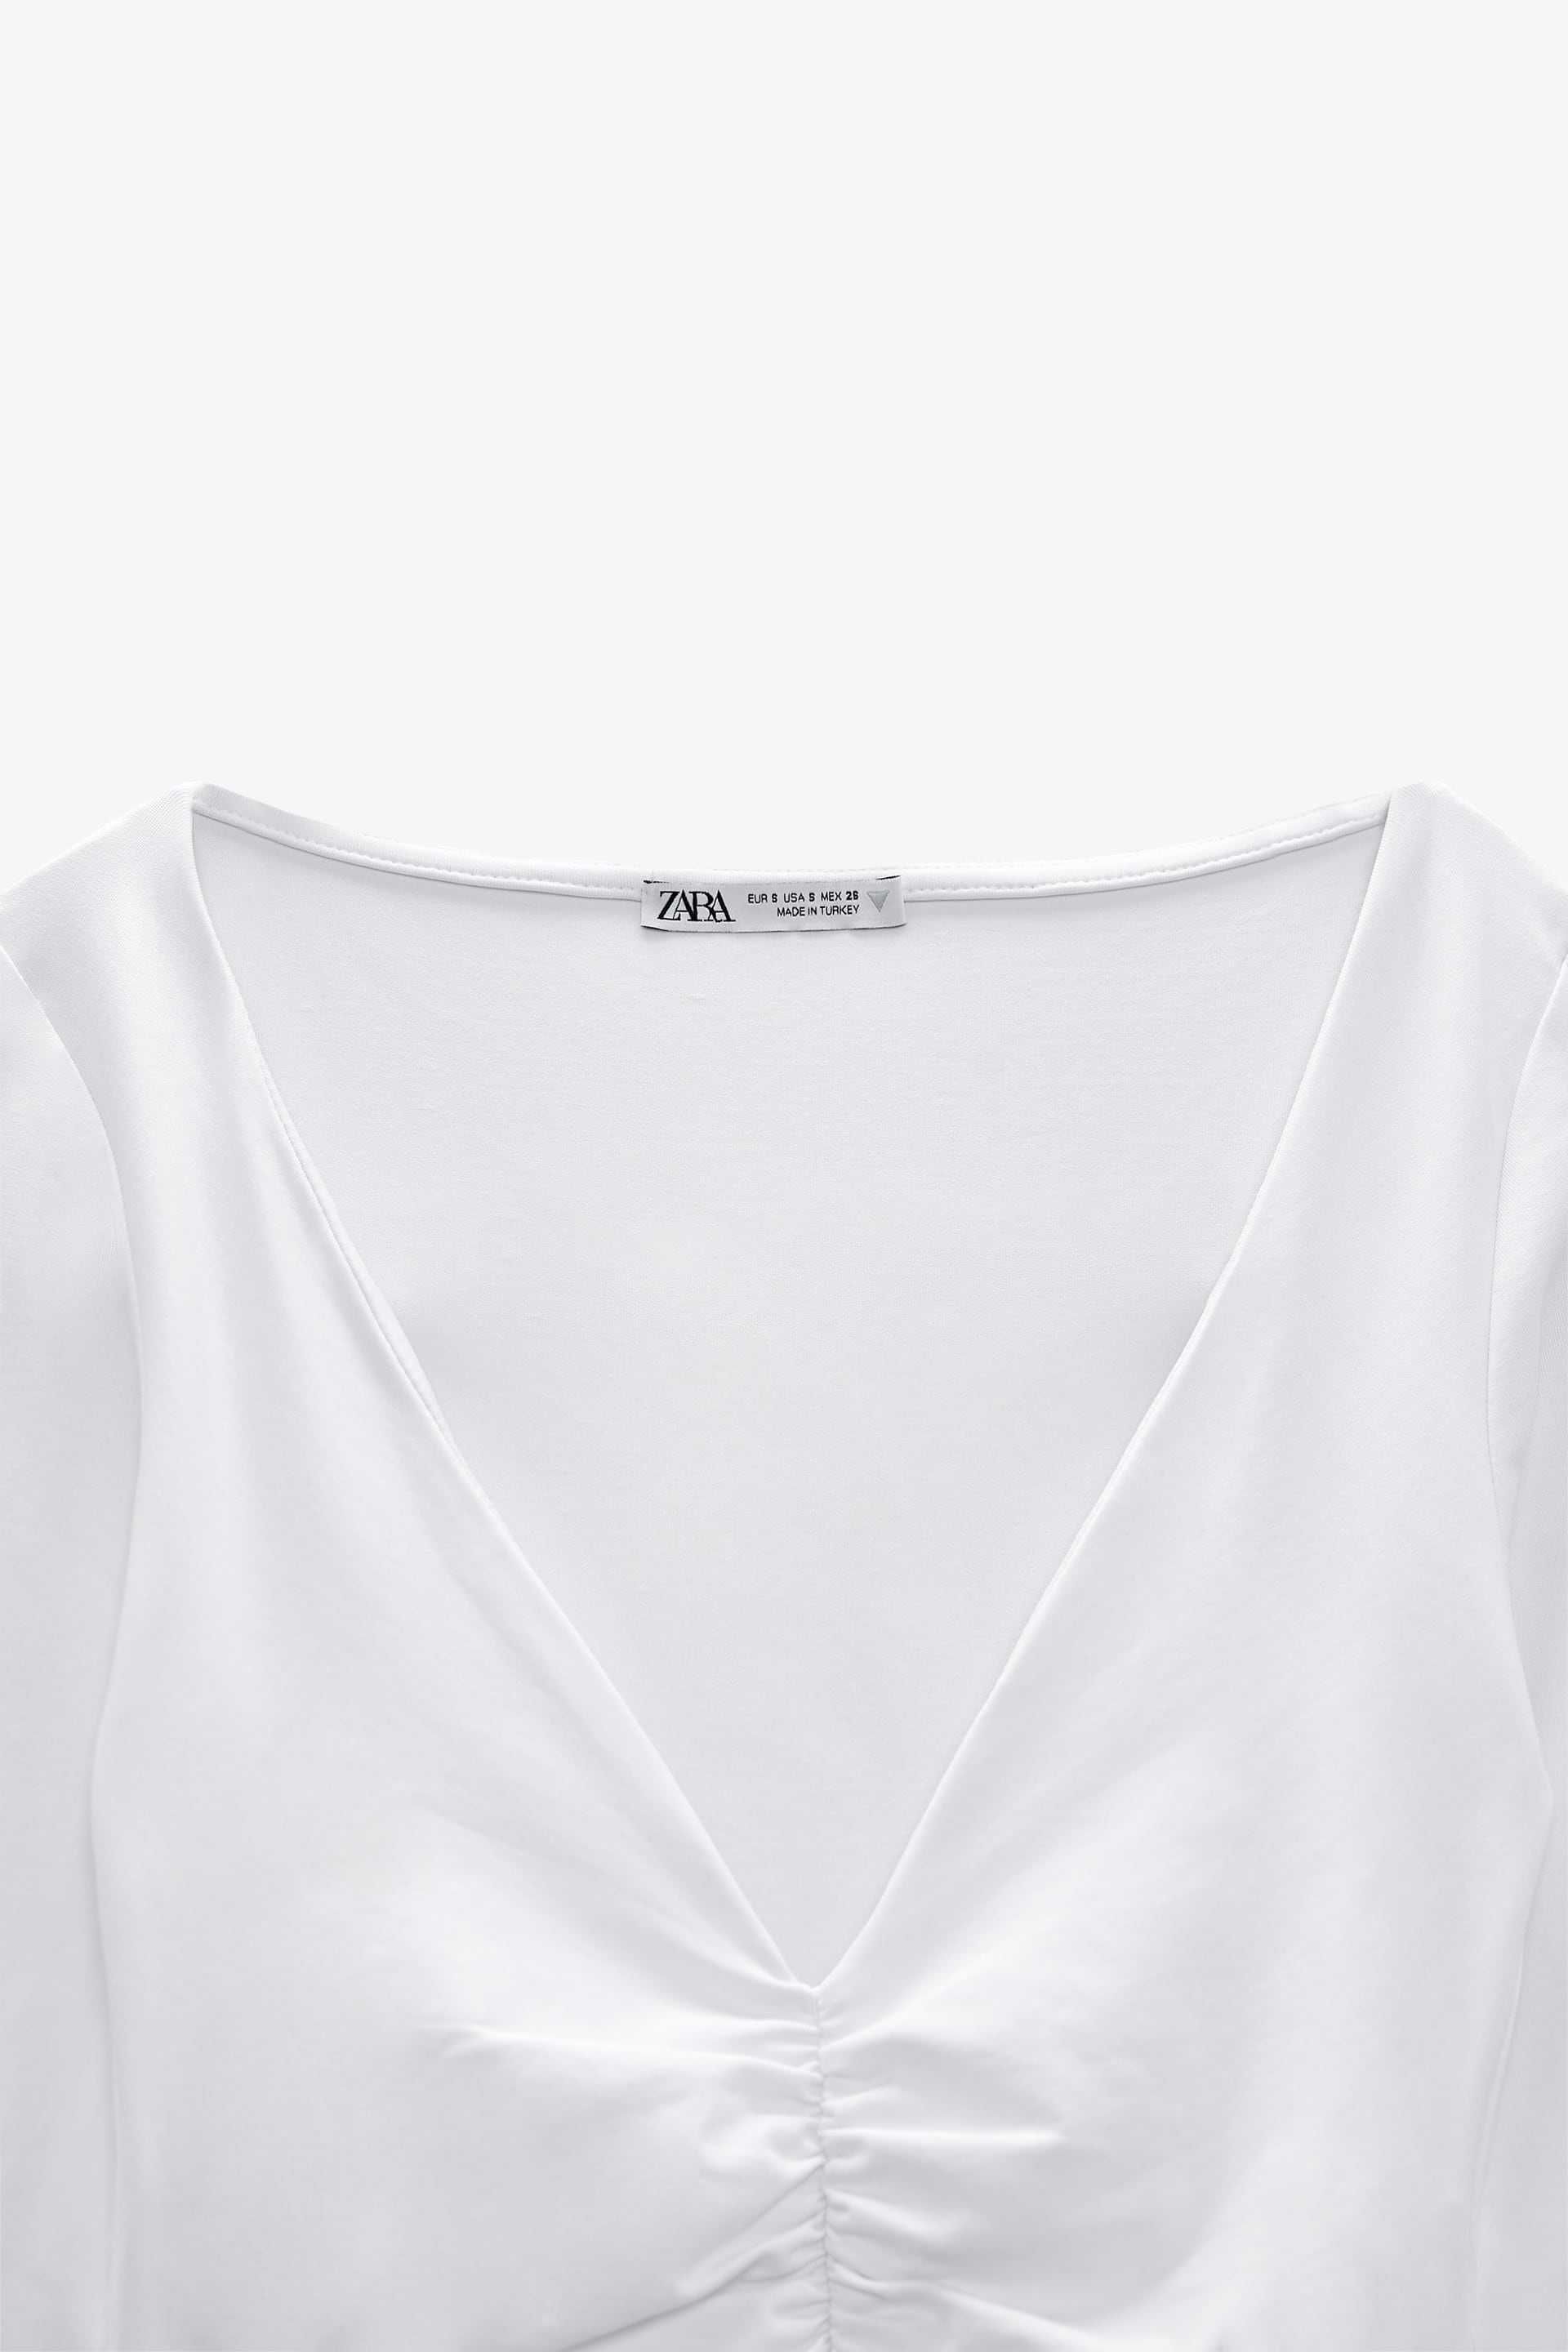 Женский новый боди (кофта) Zara - размер M